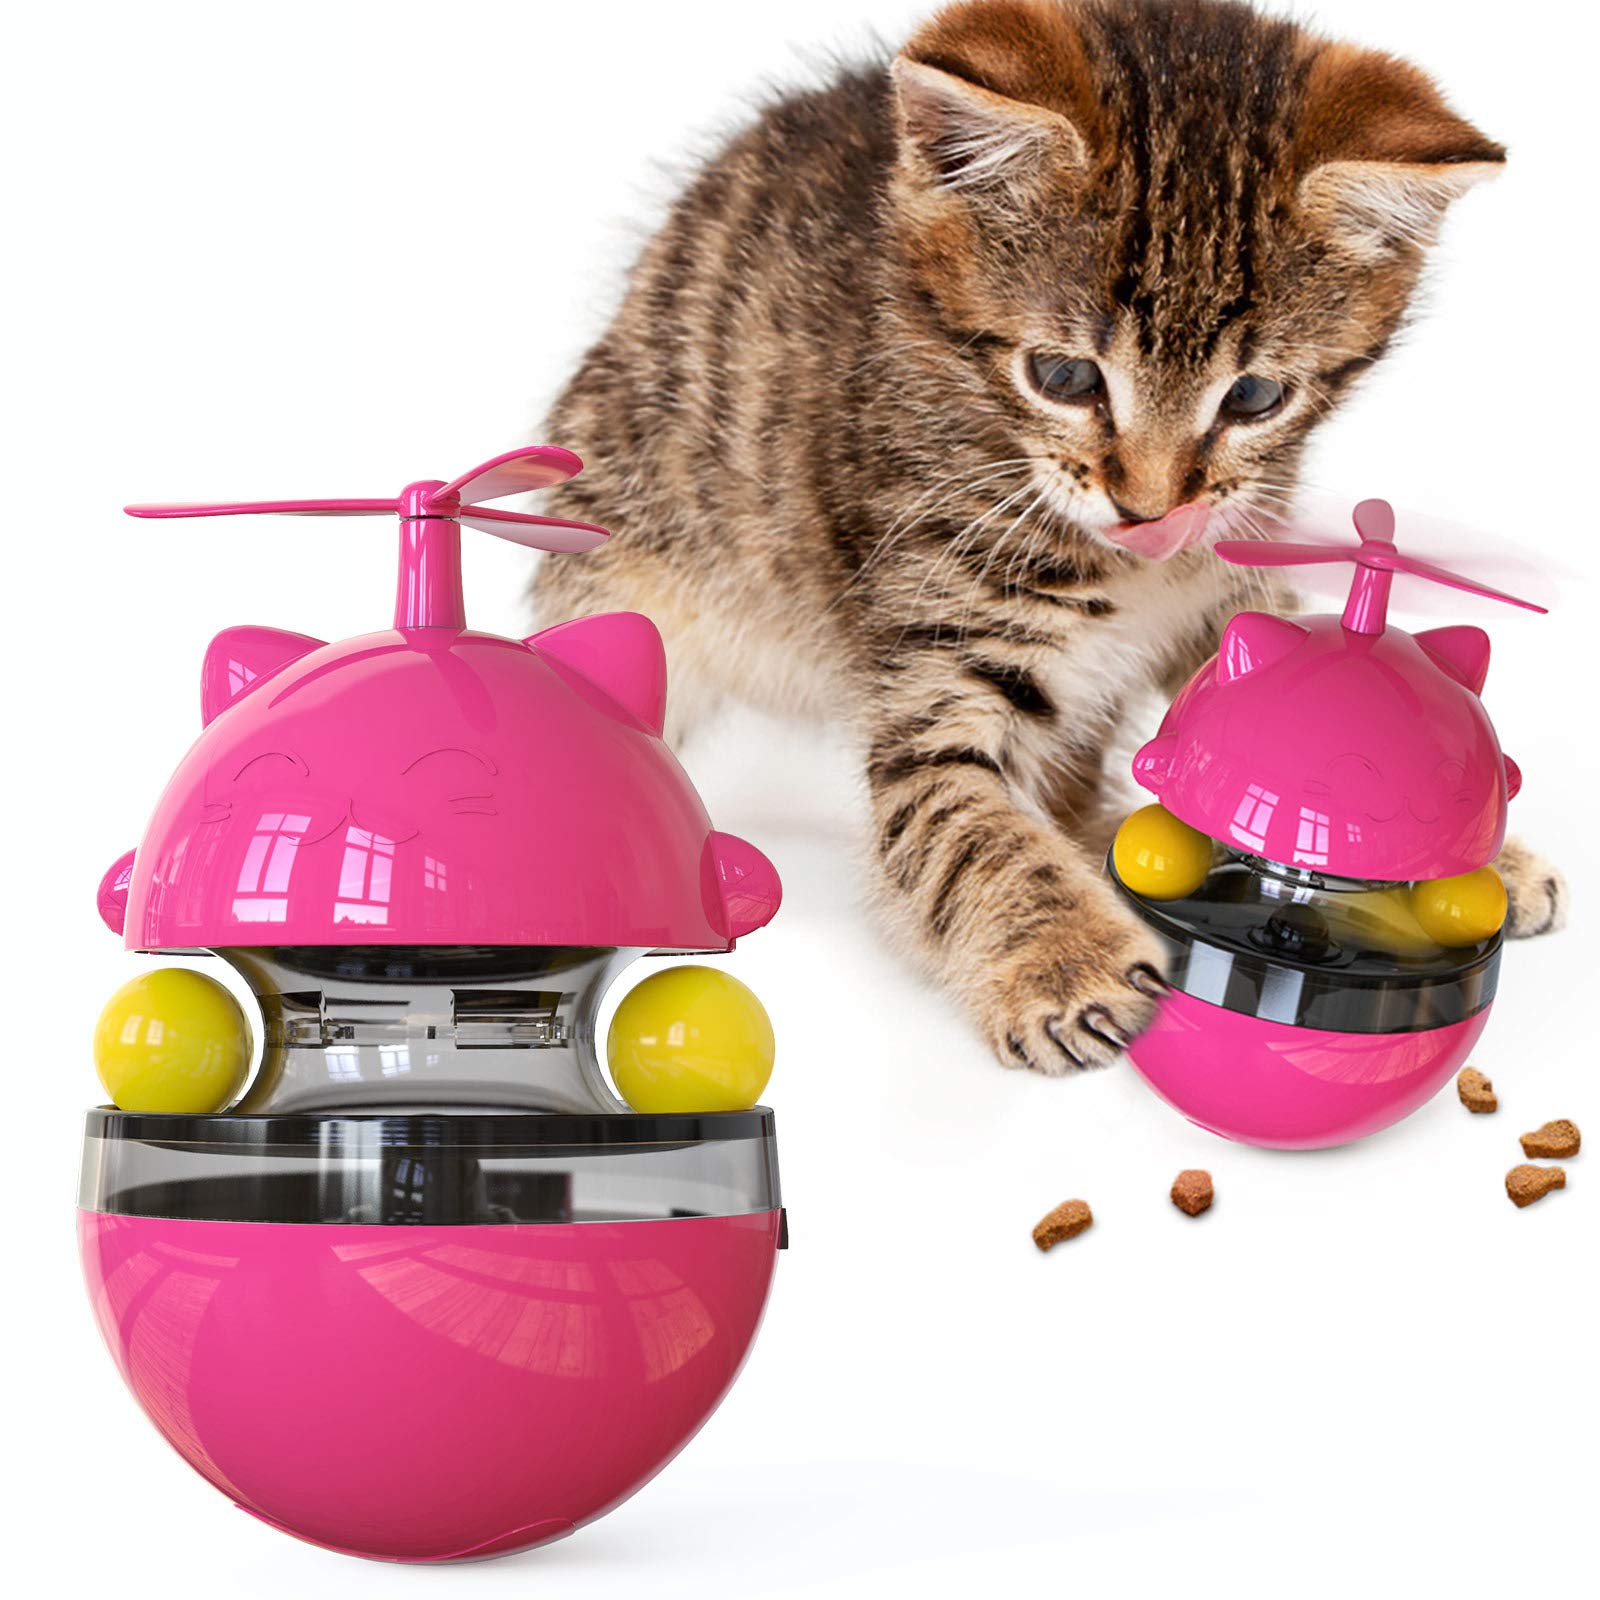 NW Whirlwind Fortune Katzenspielzeug Leckage Spielzeug Katzenspielzeug Training Beweglichkeit Verbesserung der IQ Lebensmitteldosierung Funktion Halten Sie sich in Gute Gesundheit Linderung Angst